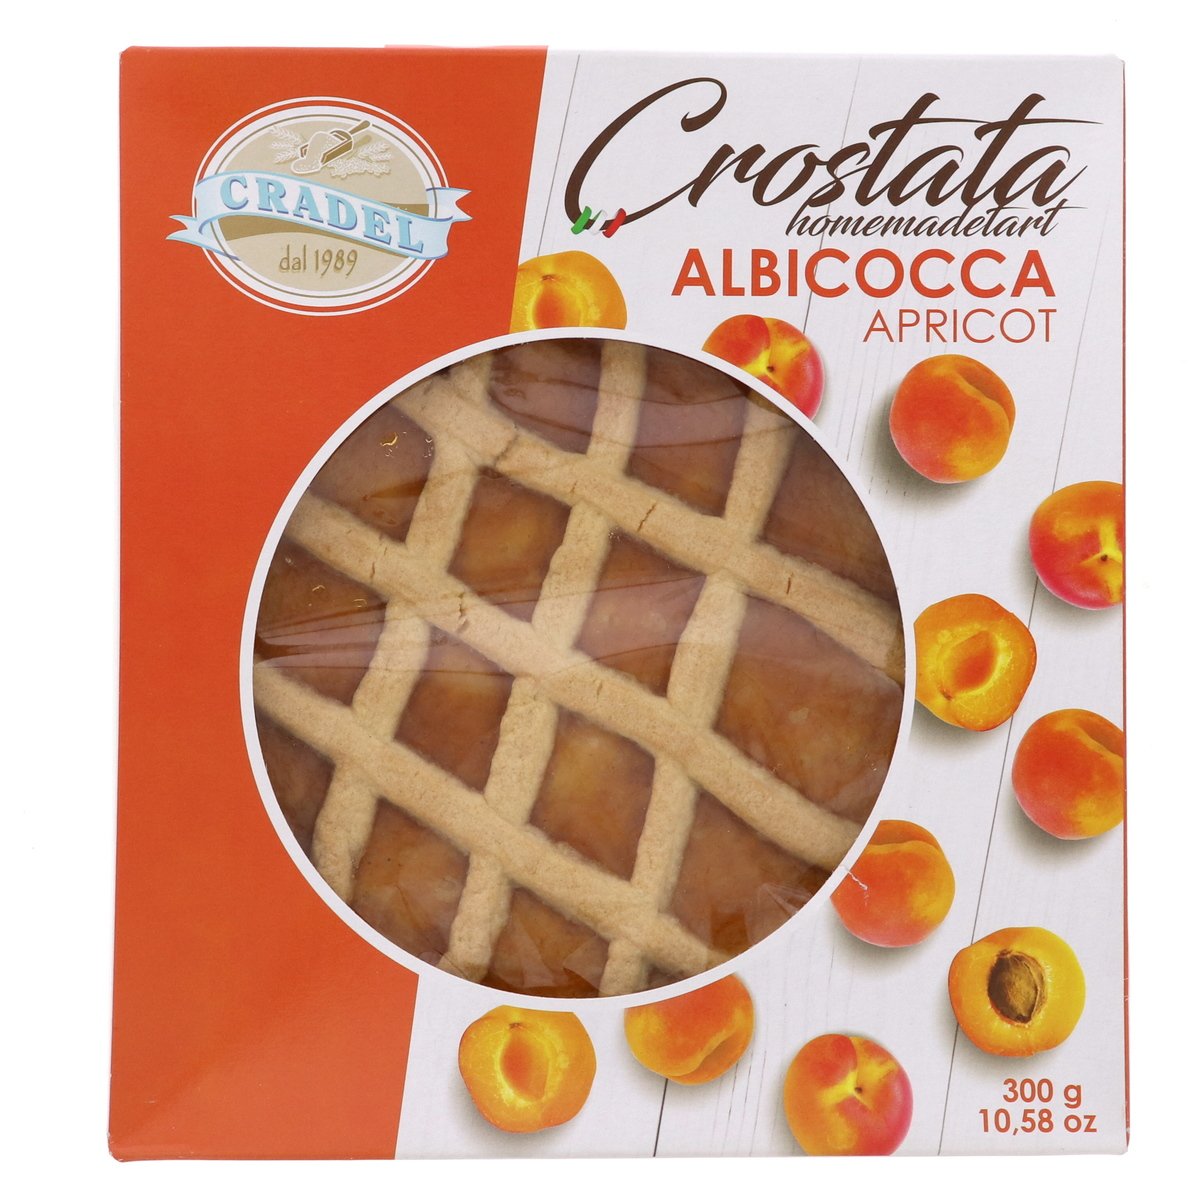 Cradel Crostata Homemade Apricot Tart 300g